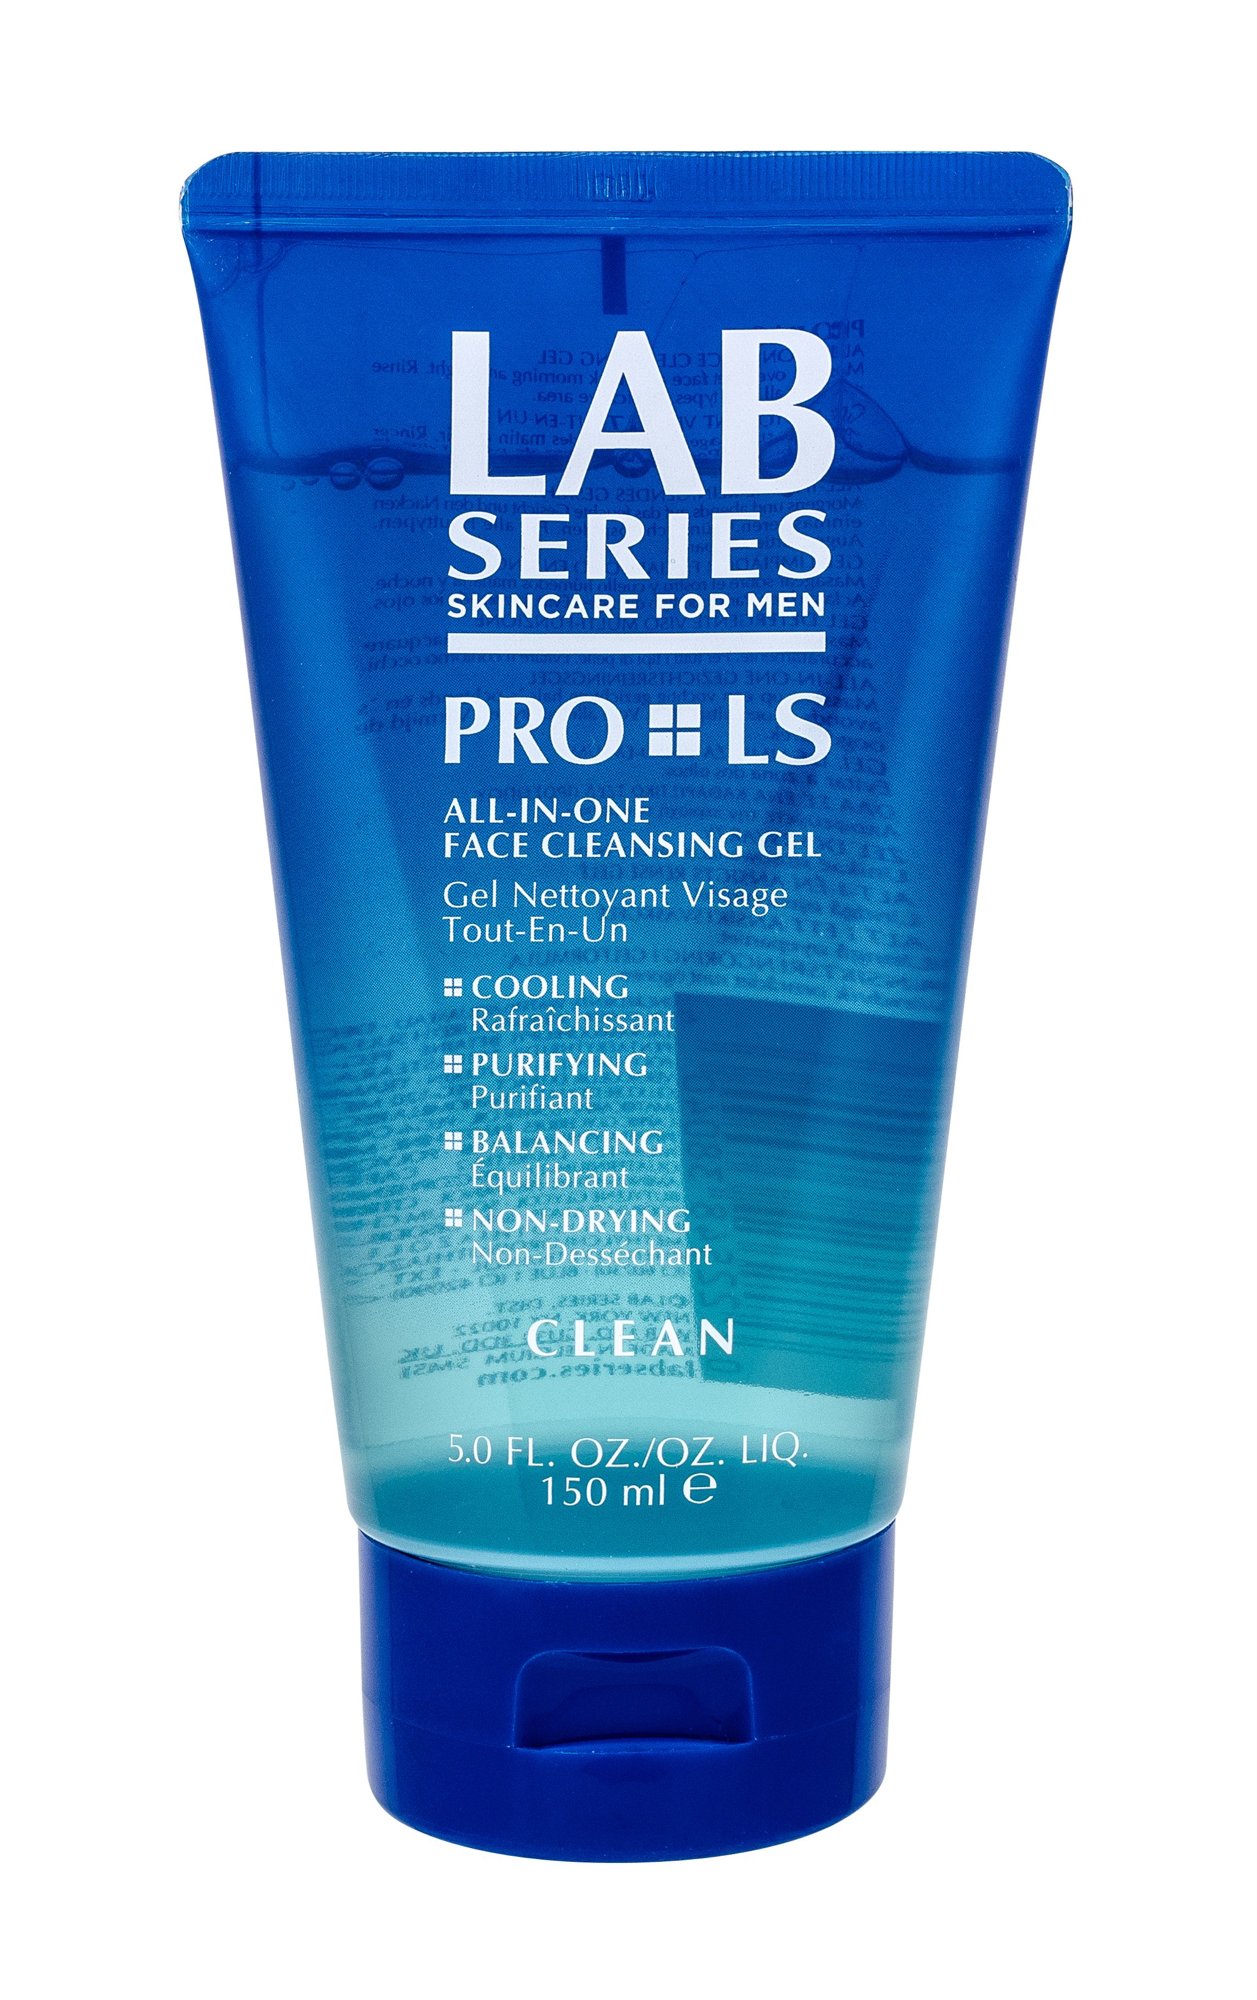 Lab Series PRO LS All-In-One Face Cleansing Gel veido gelis